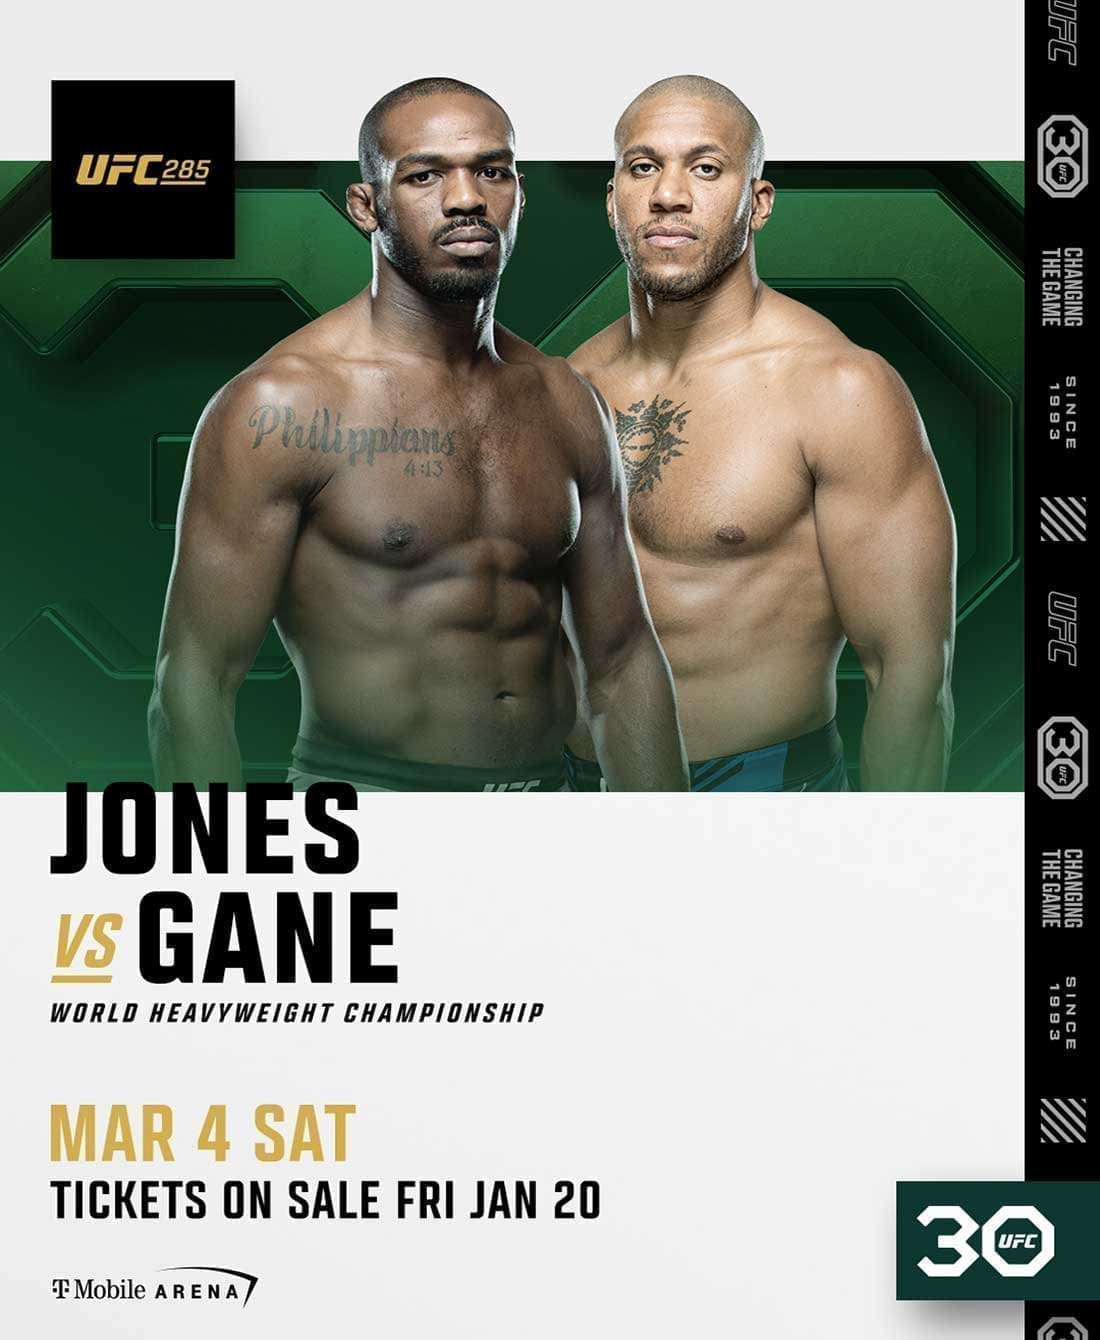 UFC 285: Джонс - Ган дата проведения, кард, участники и результаты